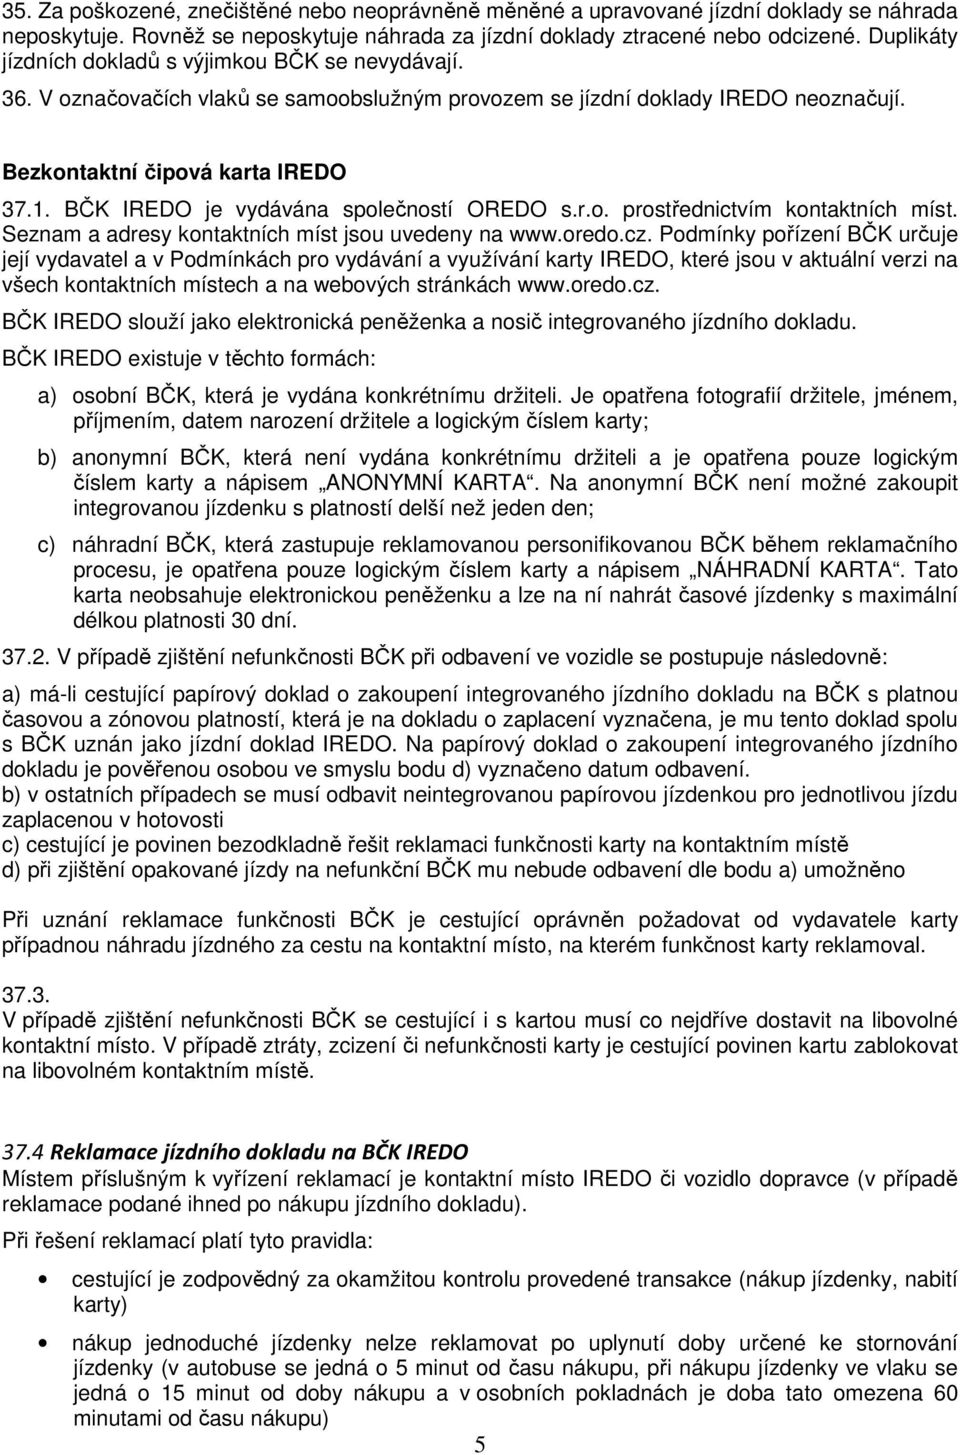 BČK IREDO je vydávána společností OREDO s.r.o. prostřednictvím kontaktních míst. Seznam a adresy kontaktních míst jsou uvedeny na www.oredo.cz.